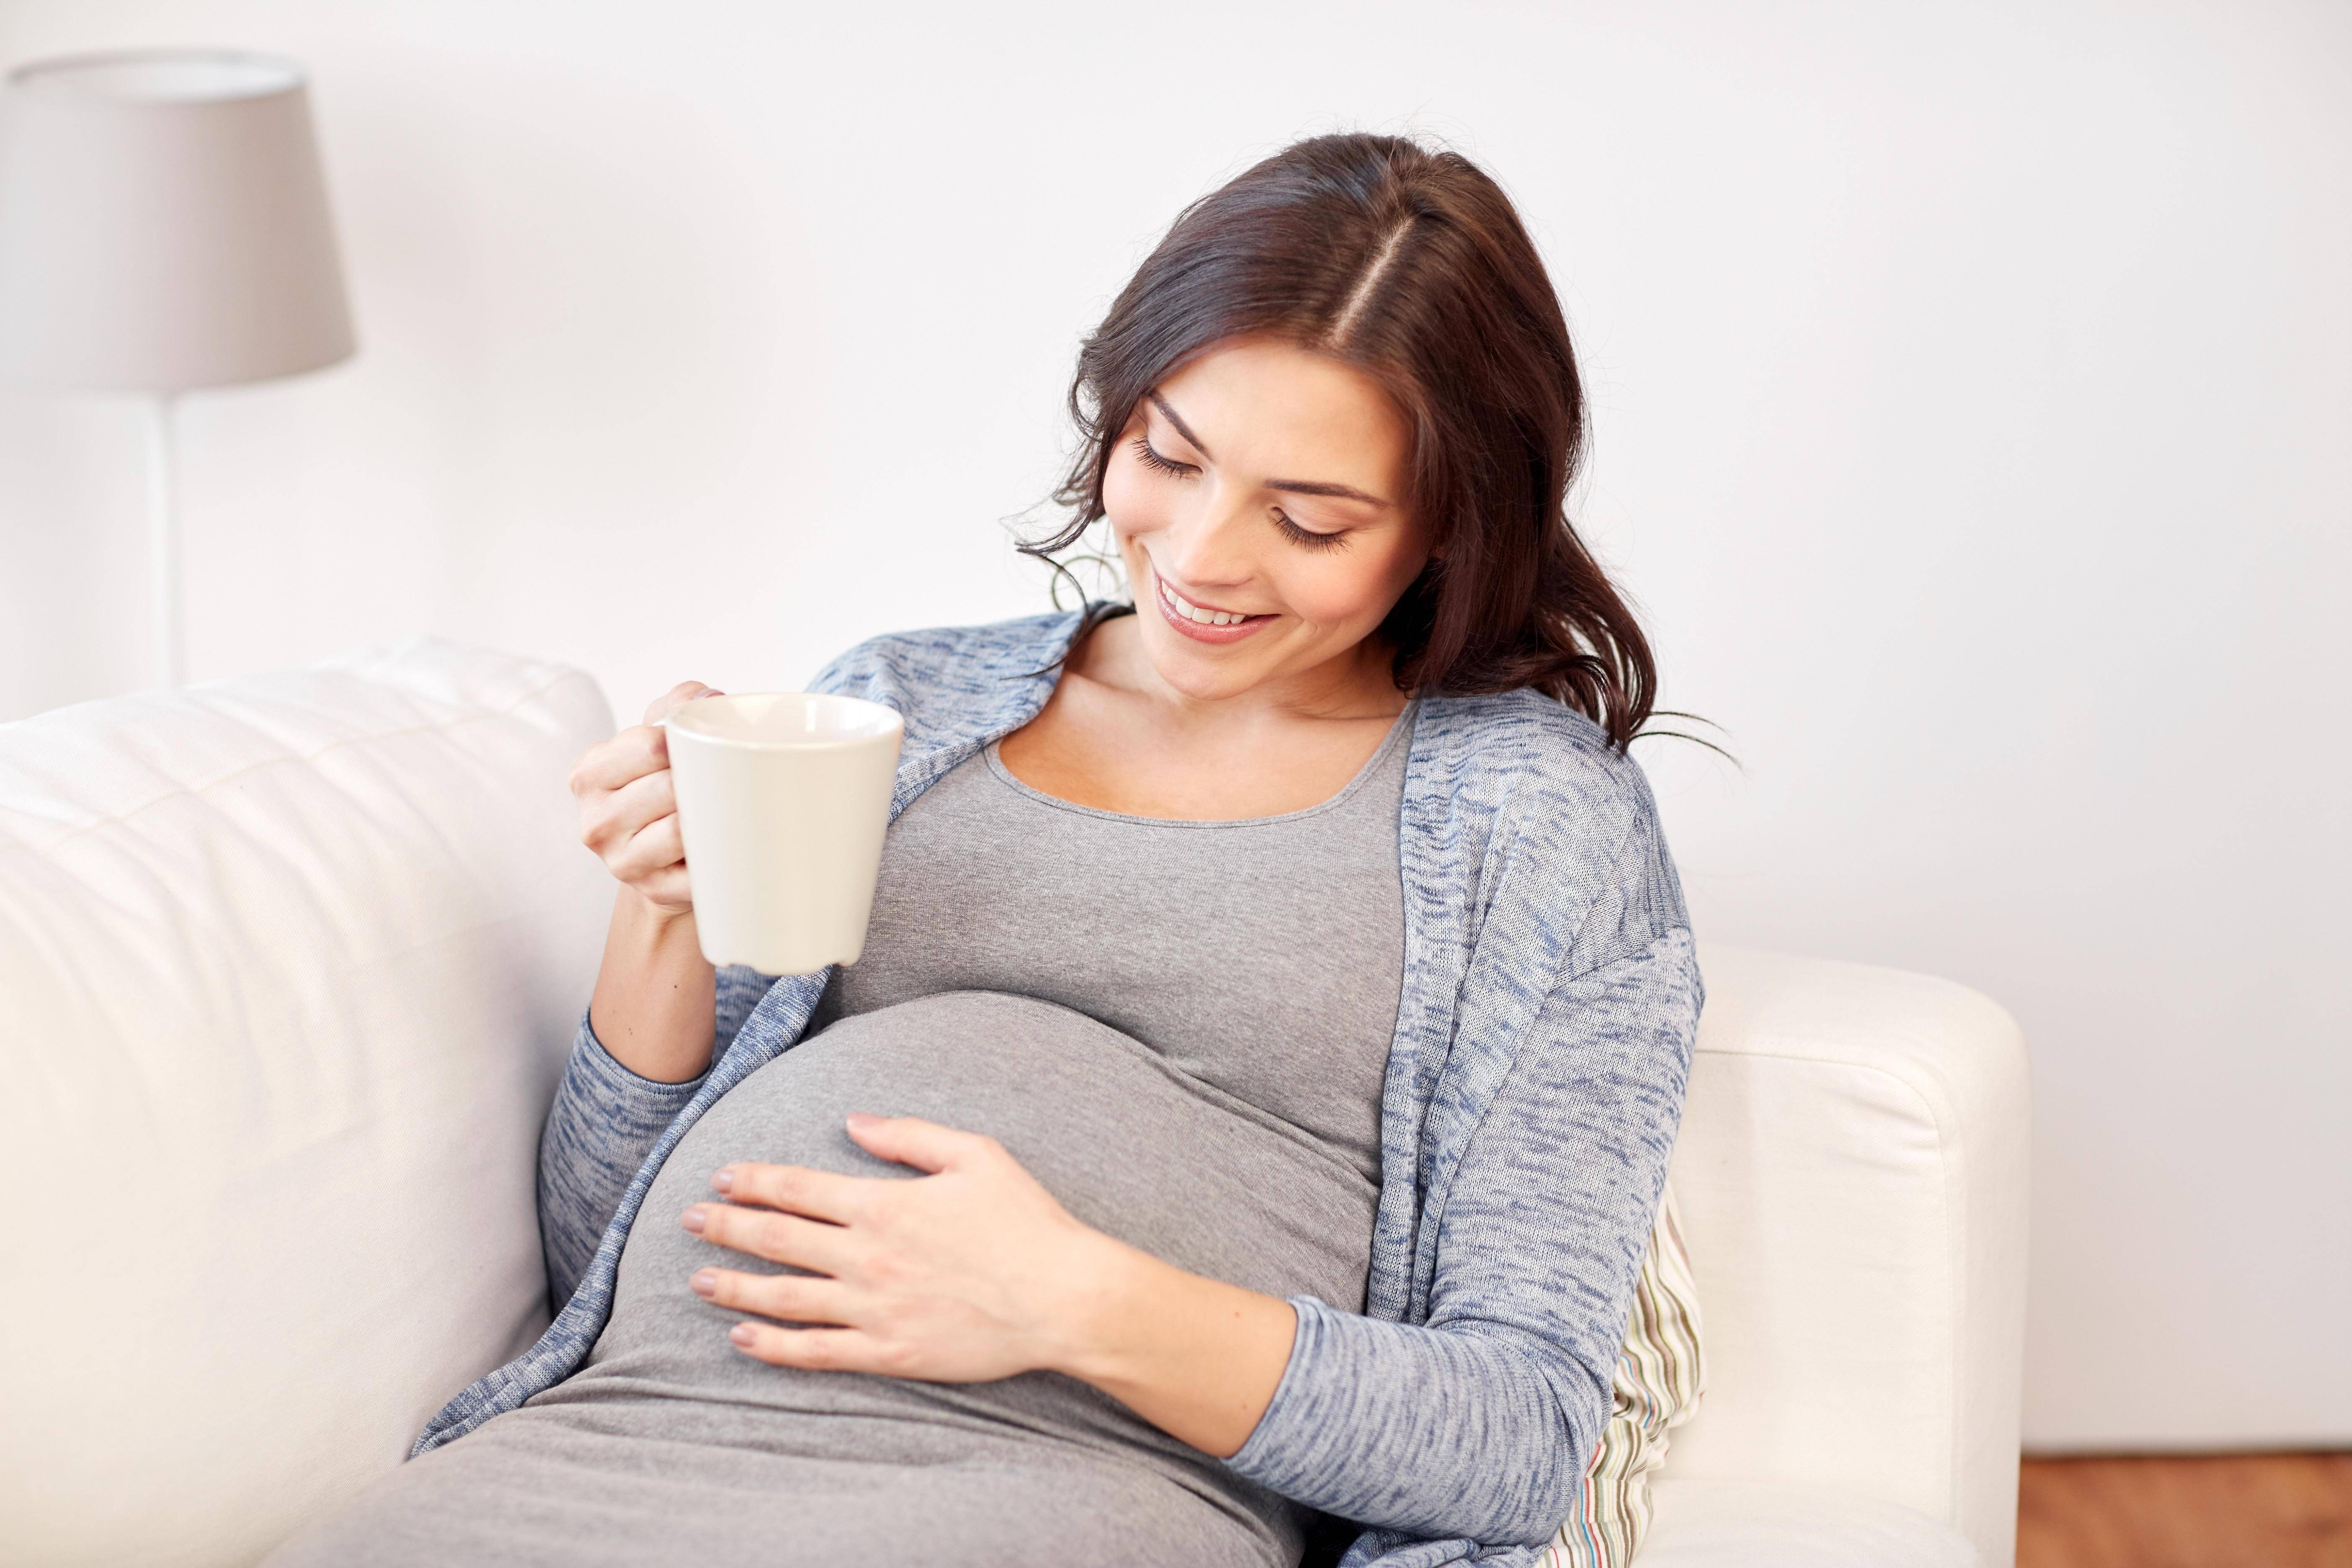 Употребление кофе в начале беременности не связано с риском развития гестационного диабета